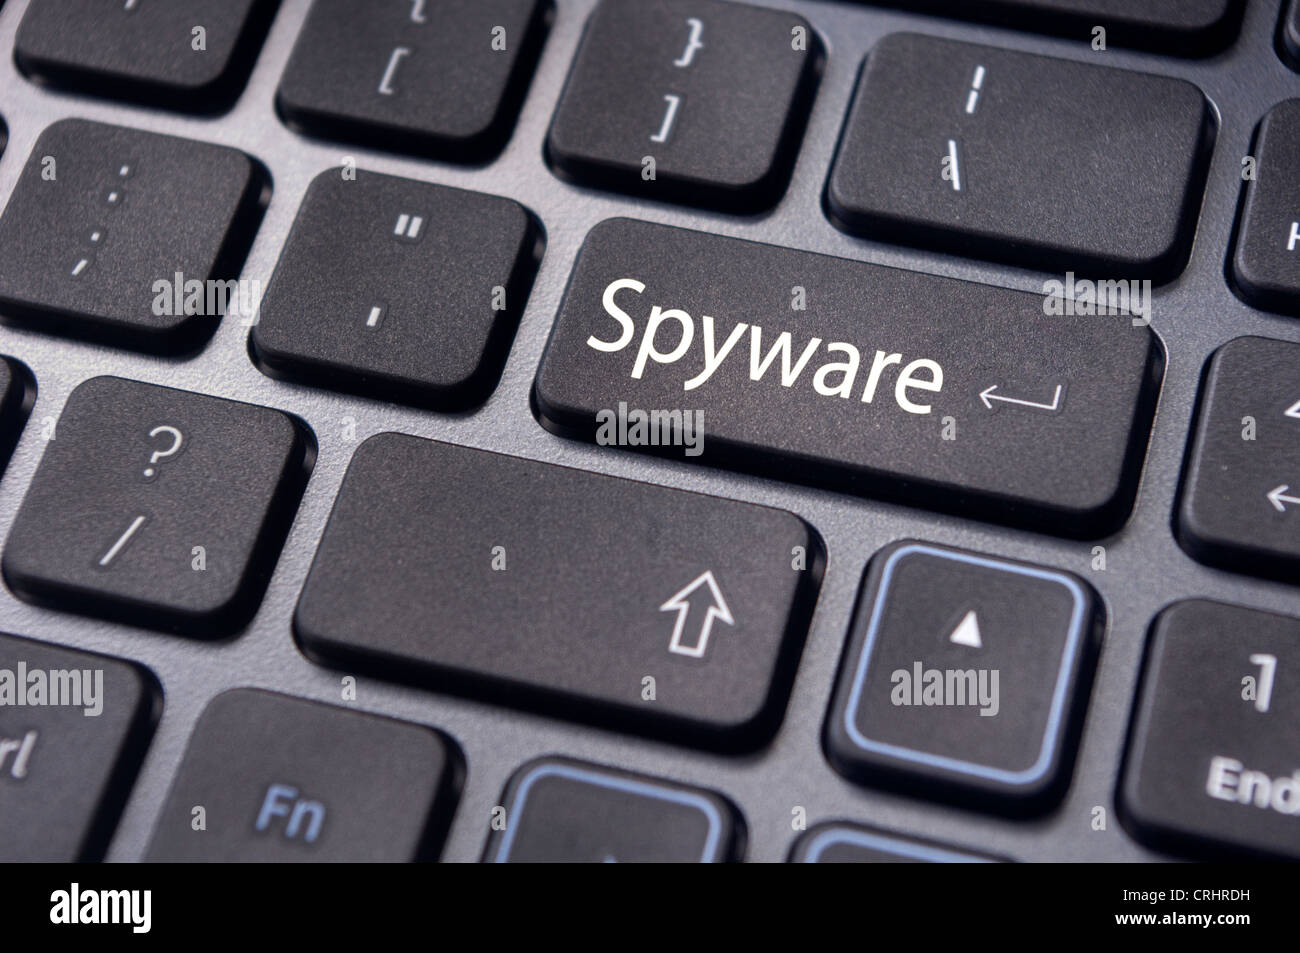 Concetti di spyware, con messaggio sul tasto Invio della tastiera. Foto Stock